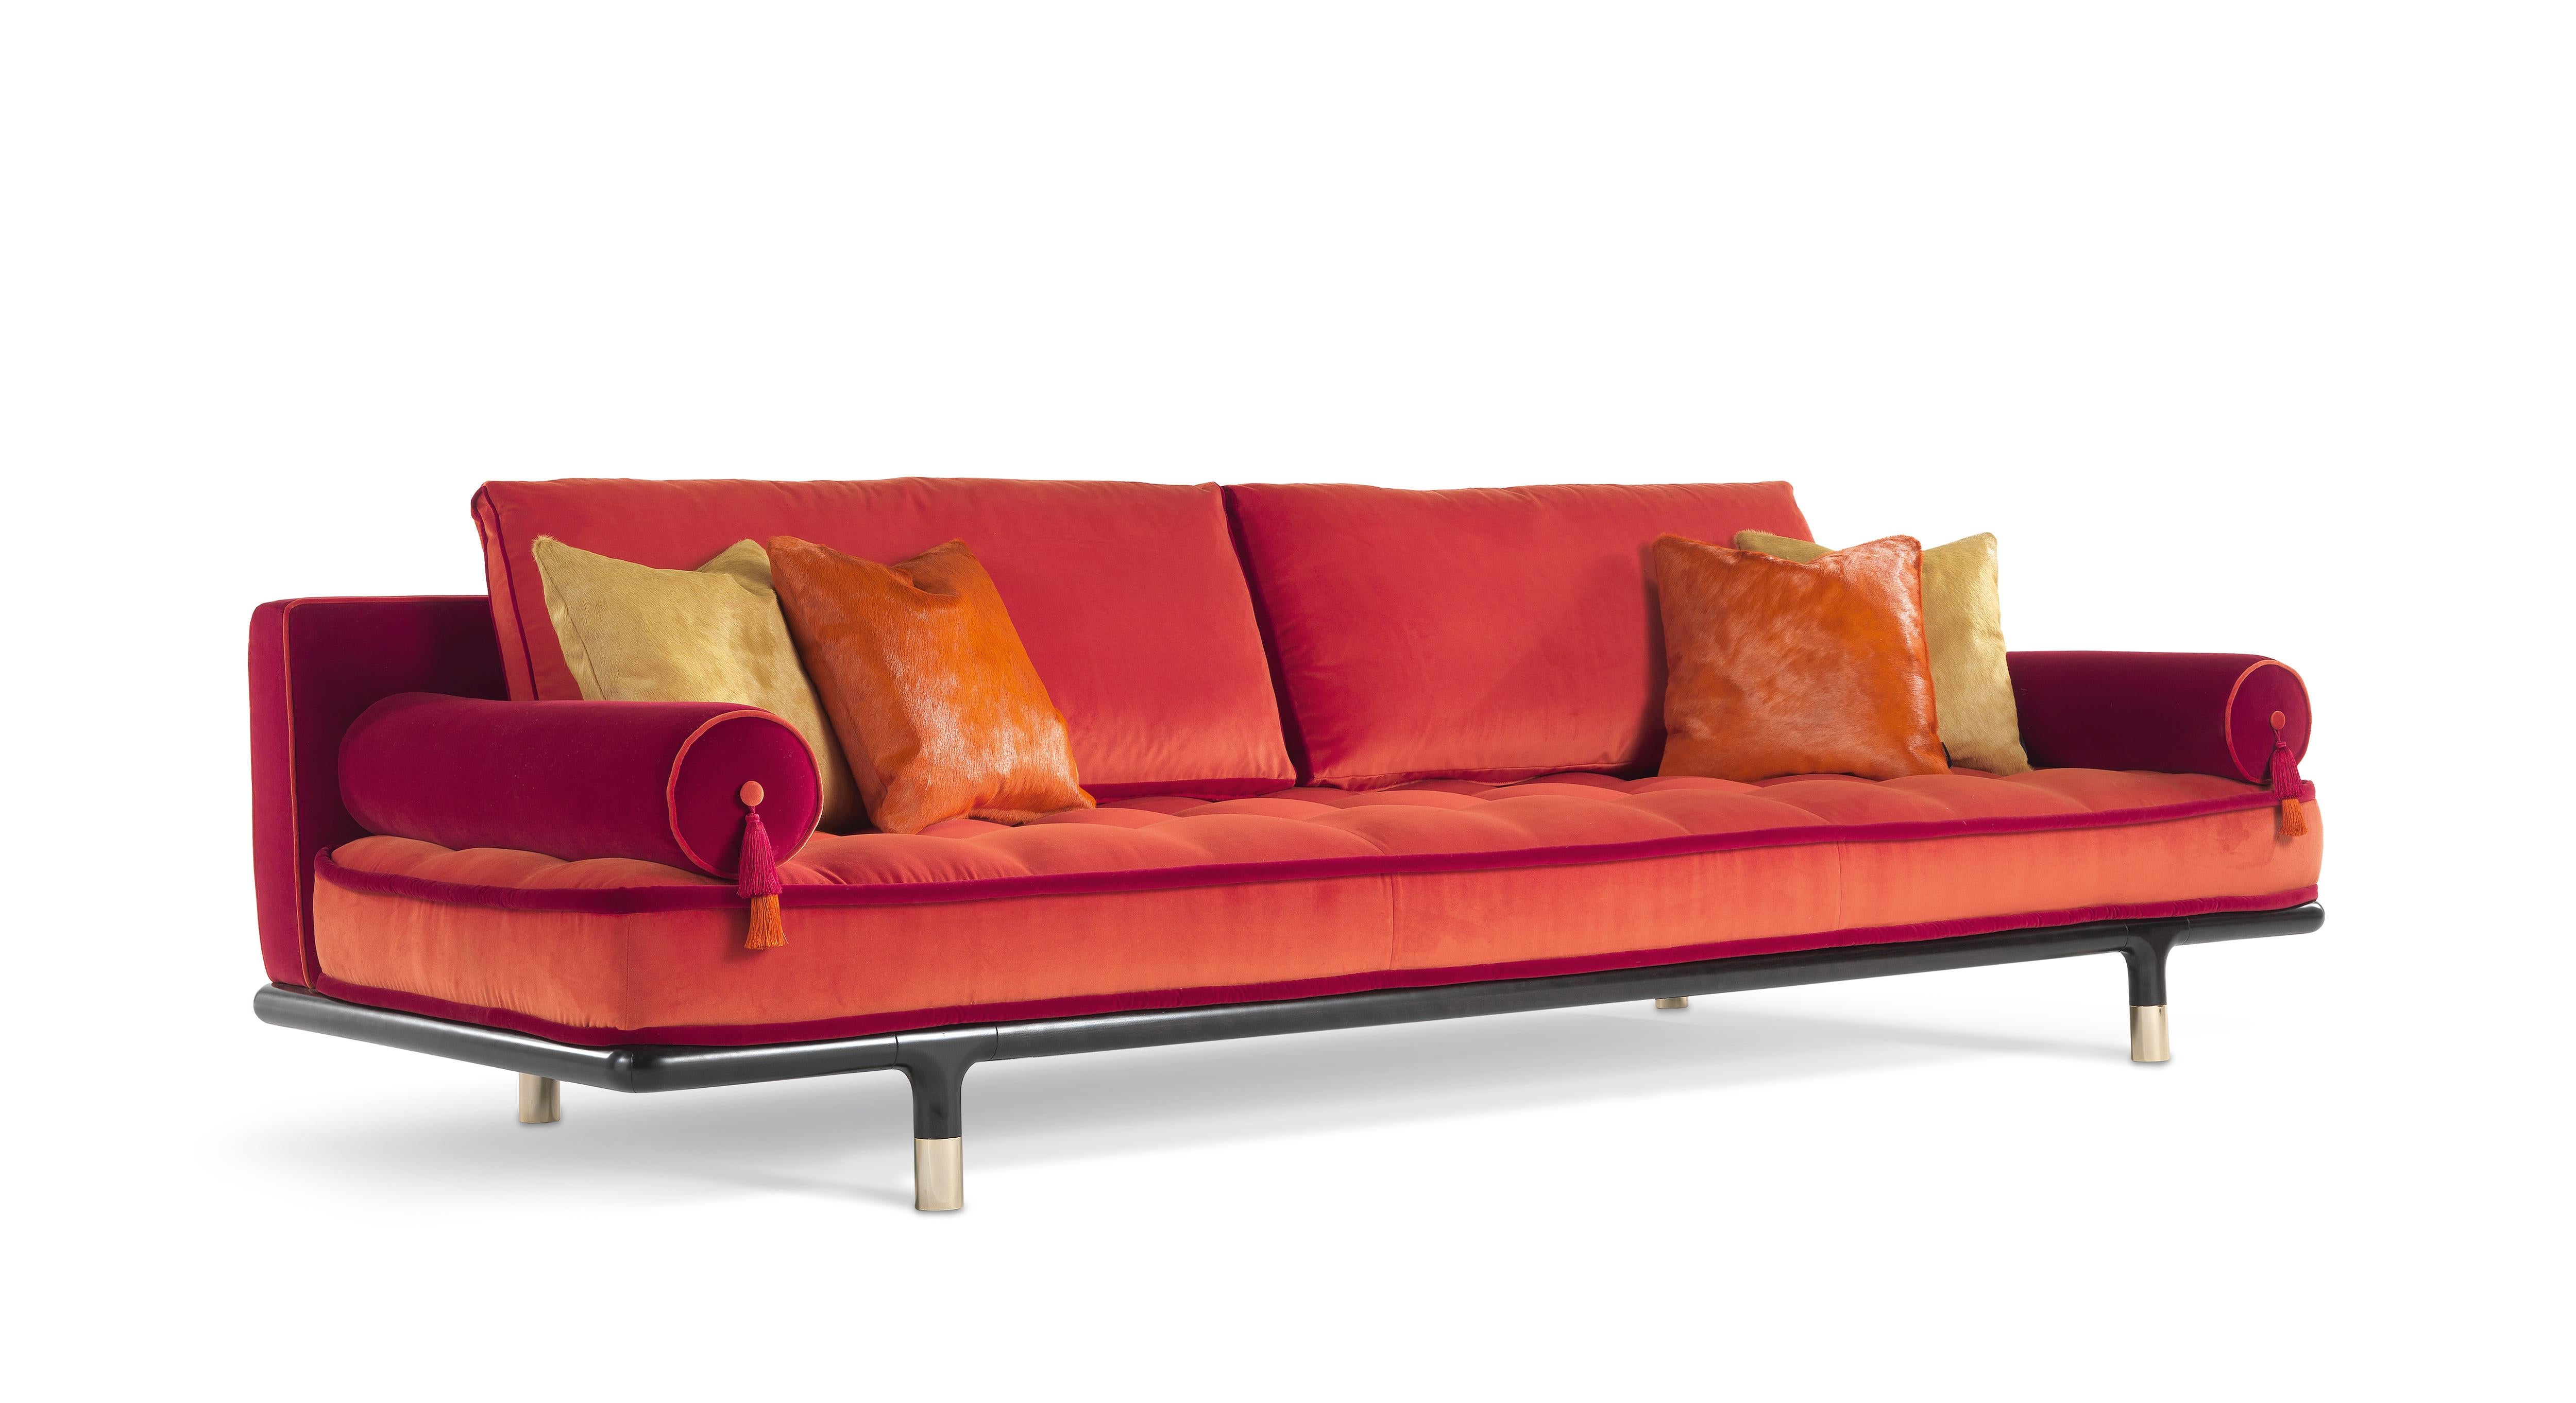 Ein Sofa mit einem einladenden und komfortablen Aussehen, das durch die Matratzenform des Sitzes unterstrichen wird. Raffinierte Details wie die polierten Messingspitzen des Sockels und die Rollenkissen mit dekorativen Quasten verstärken den